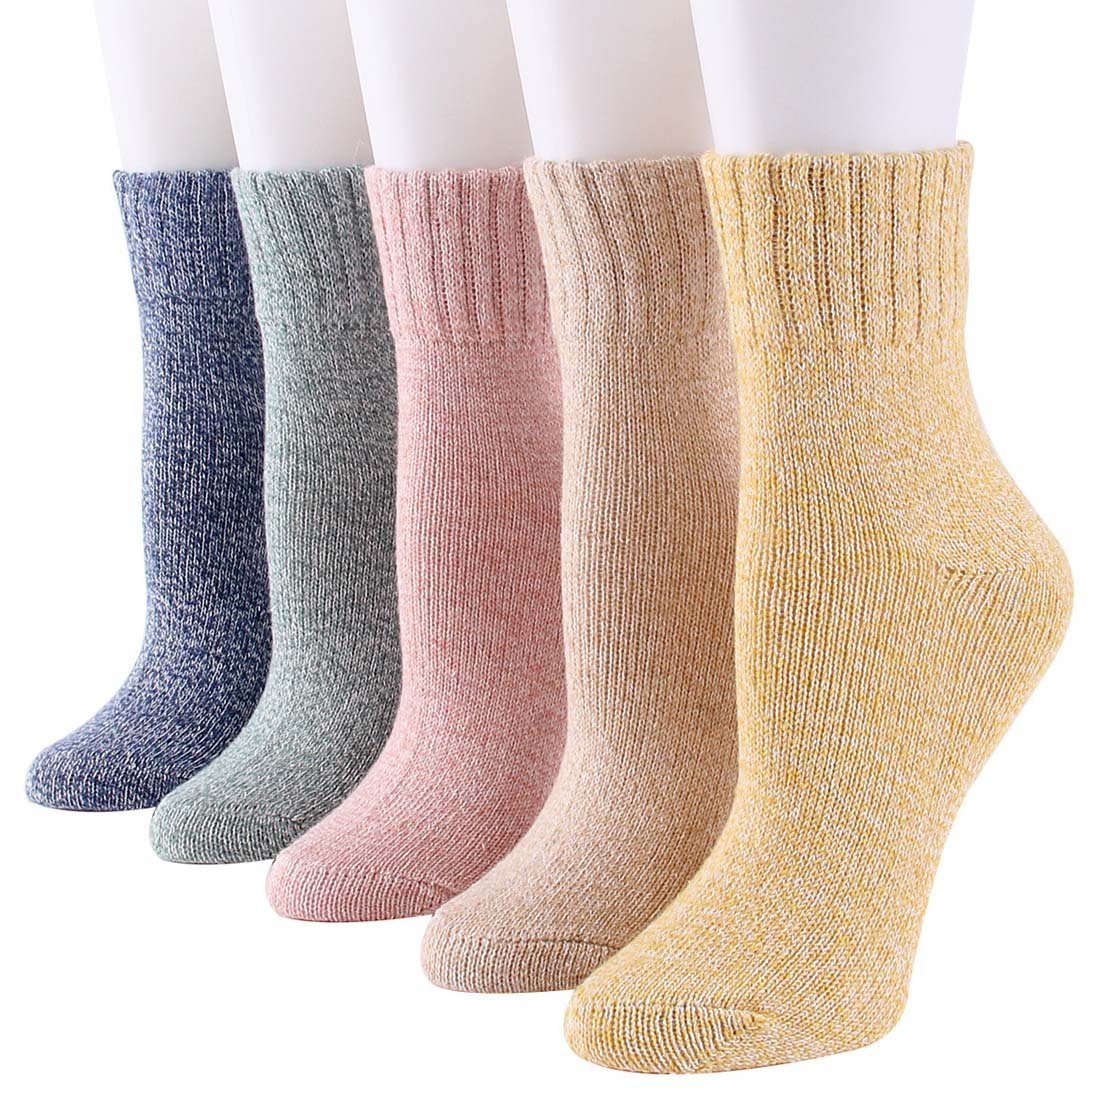 YANN Strümpfe Dicke, warme und weiche Damensocken für den Winter (5-Paar) Einfarbige Socken aus Fleece-Baumwolle bunt1